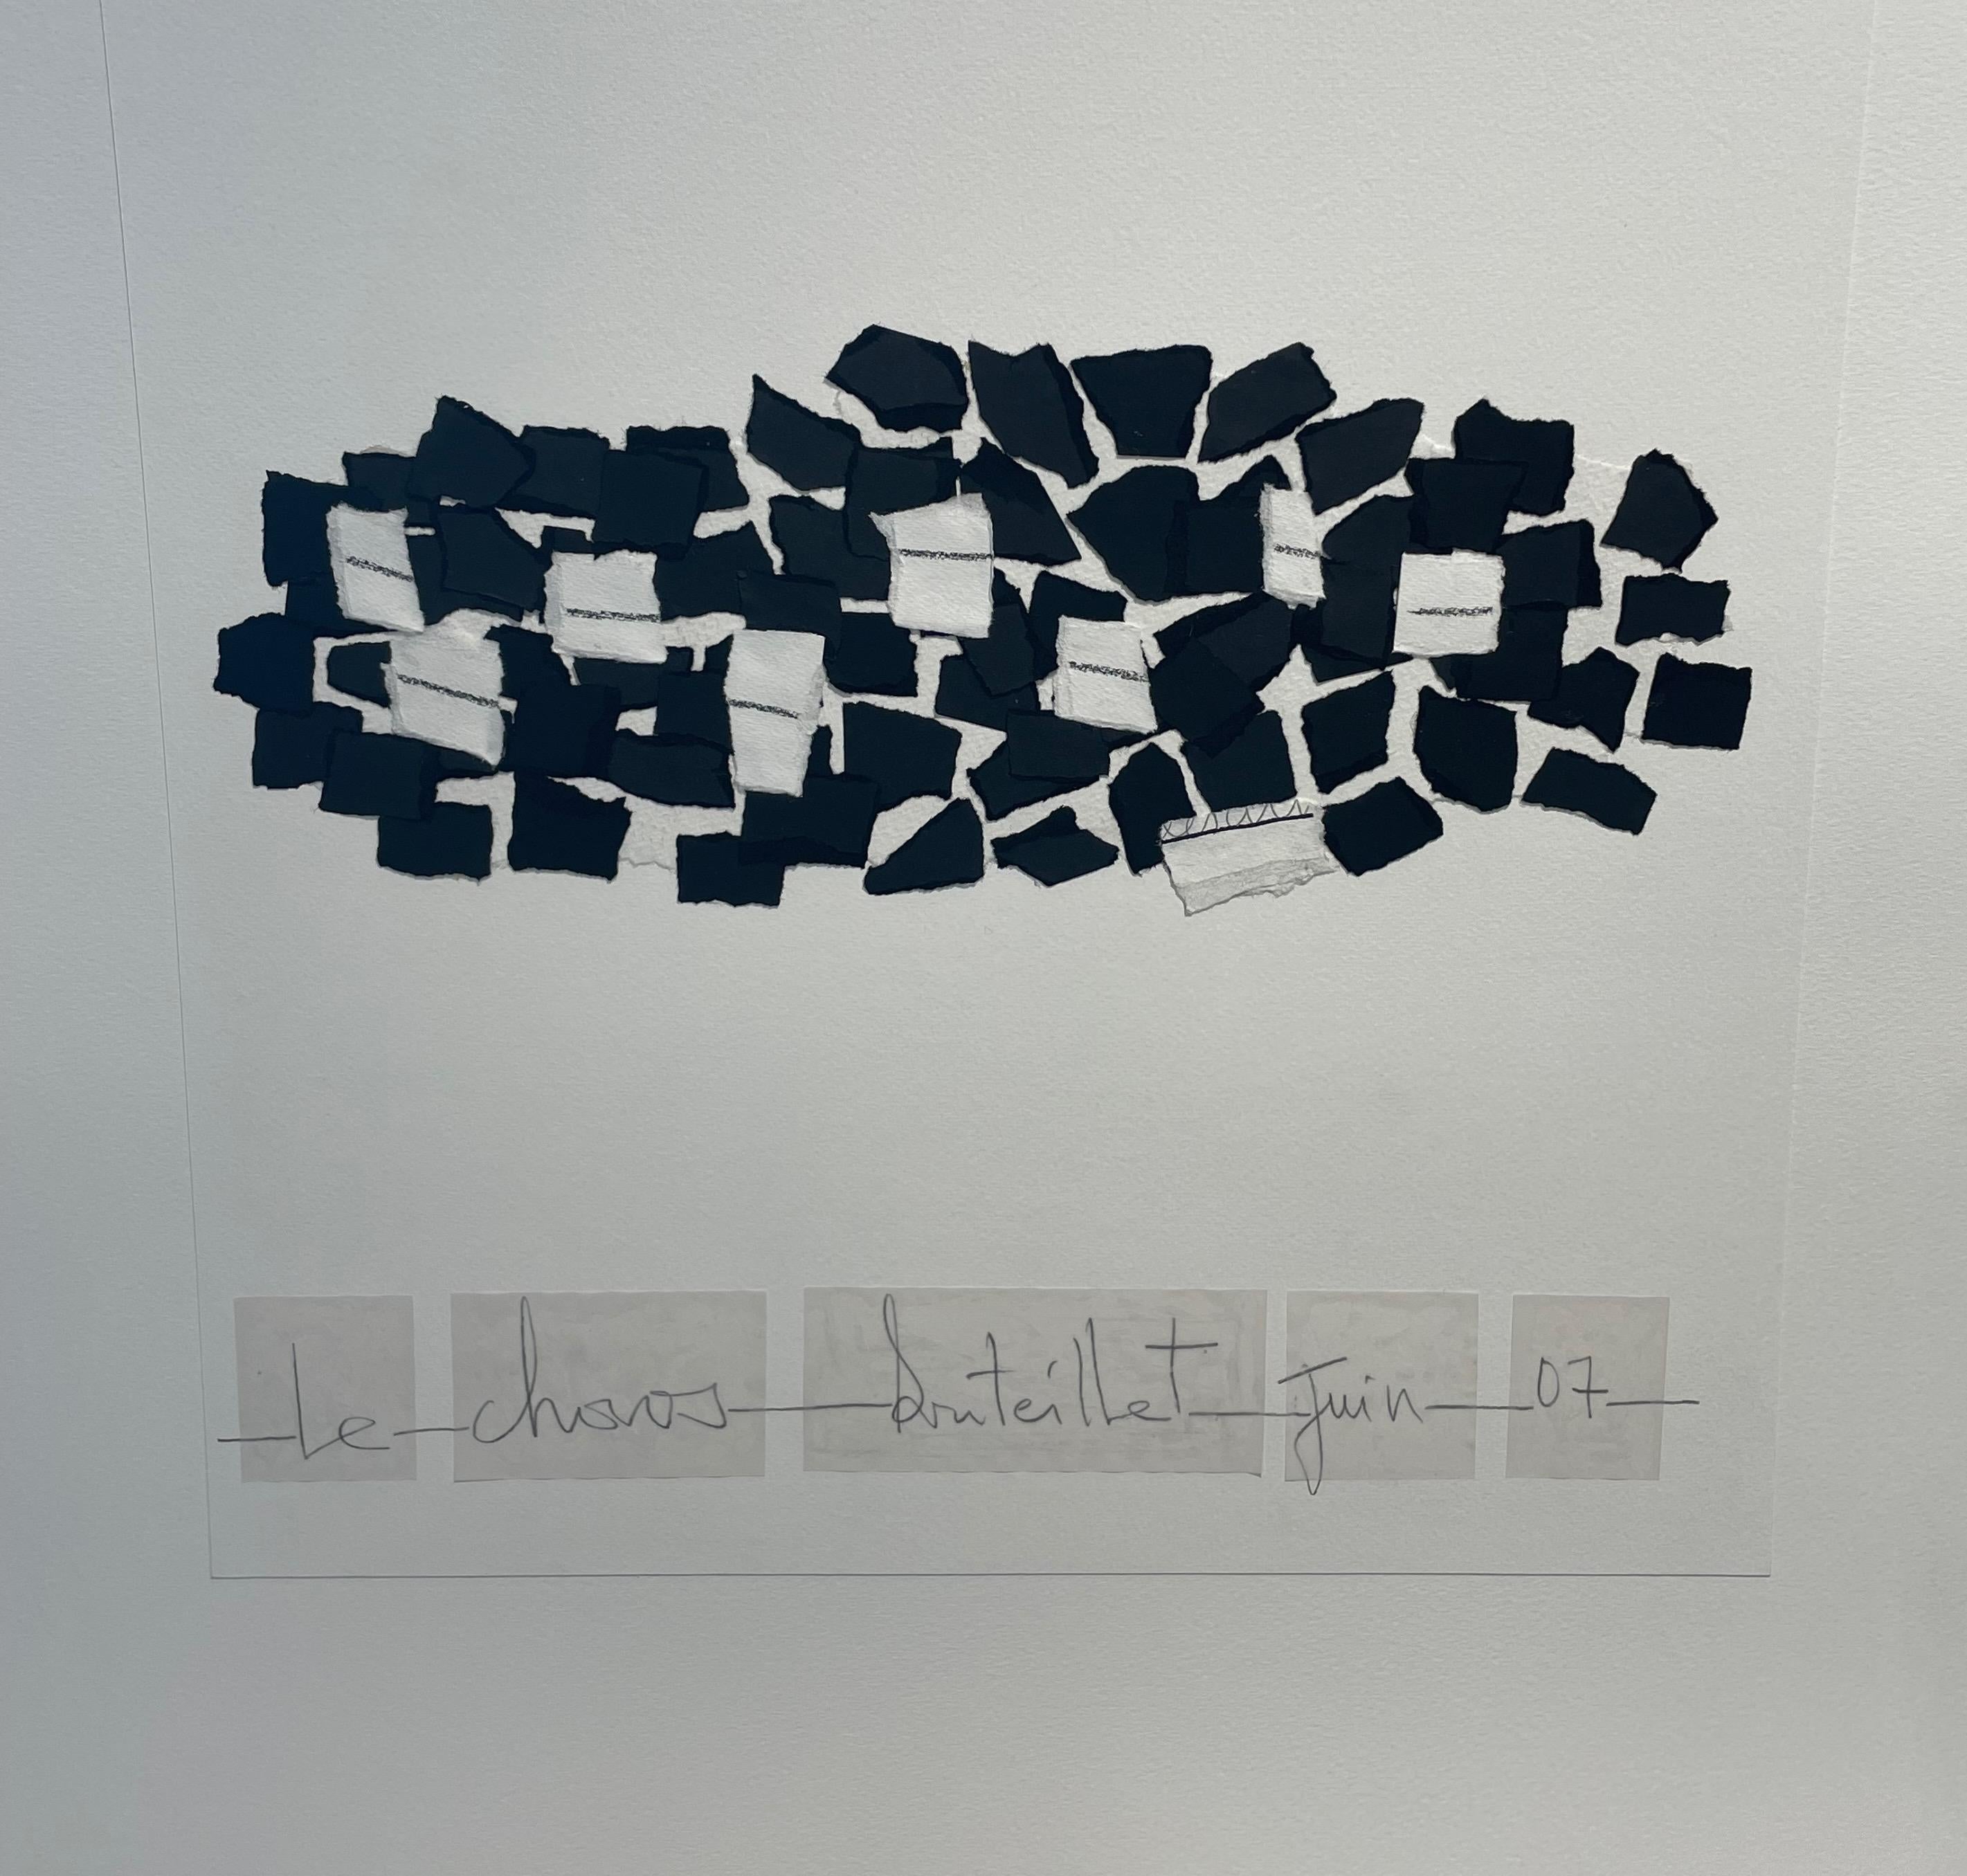 Isabelle Bouteillet ist eine autodidaktische französische Künstlerin, die hauptsächlich Collagen erstellt 
Verwendung von Mixed Media Materialien wie Acryl, Gouache und zerrissenem Papier.
Die Farben sind schwarz und weiß.
Signiert vom